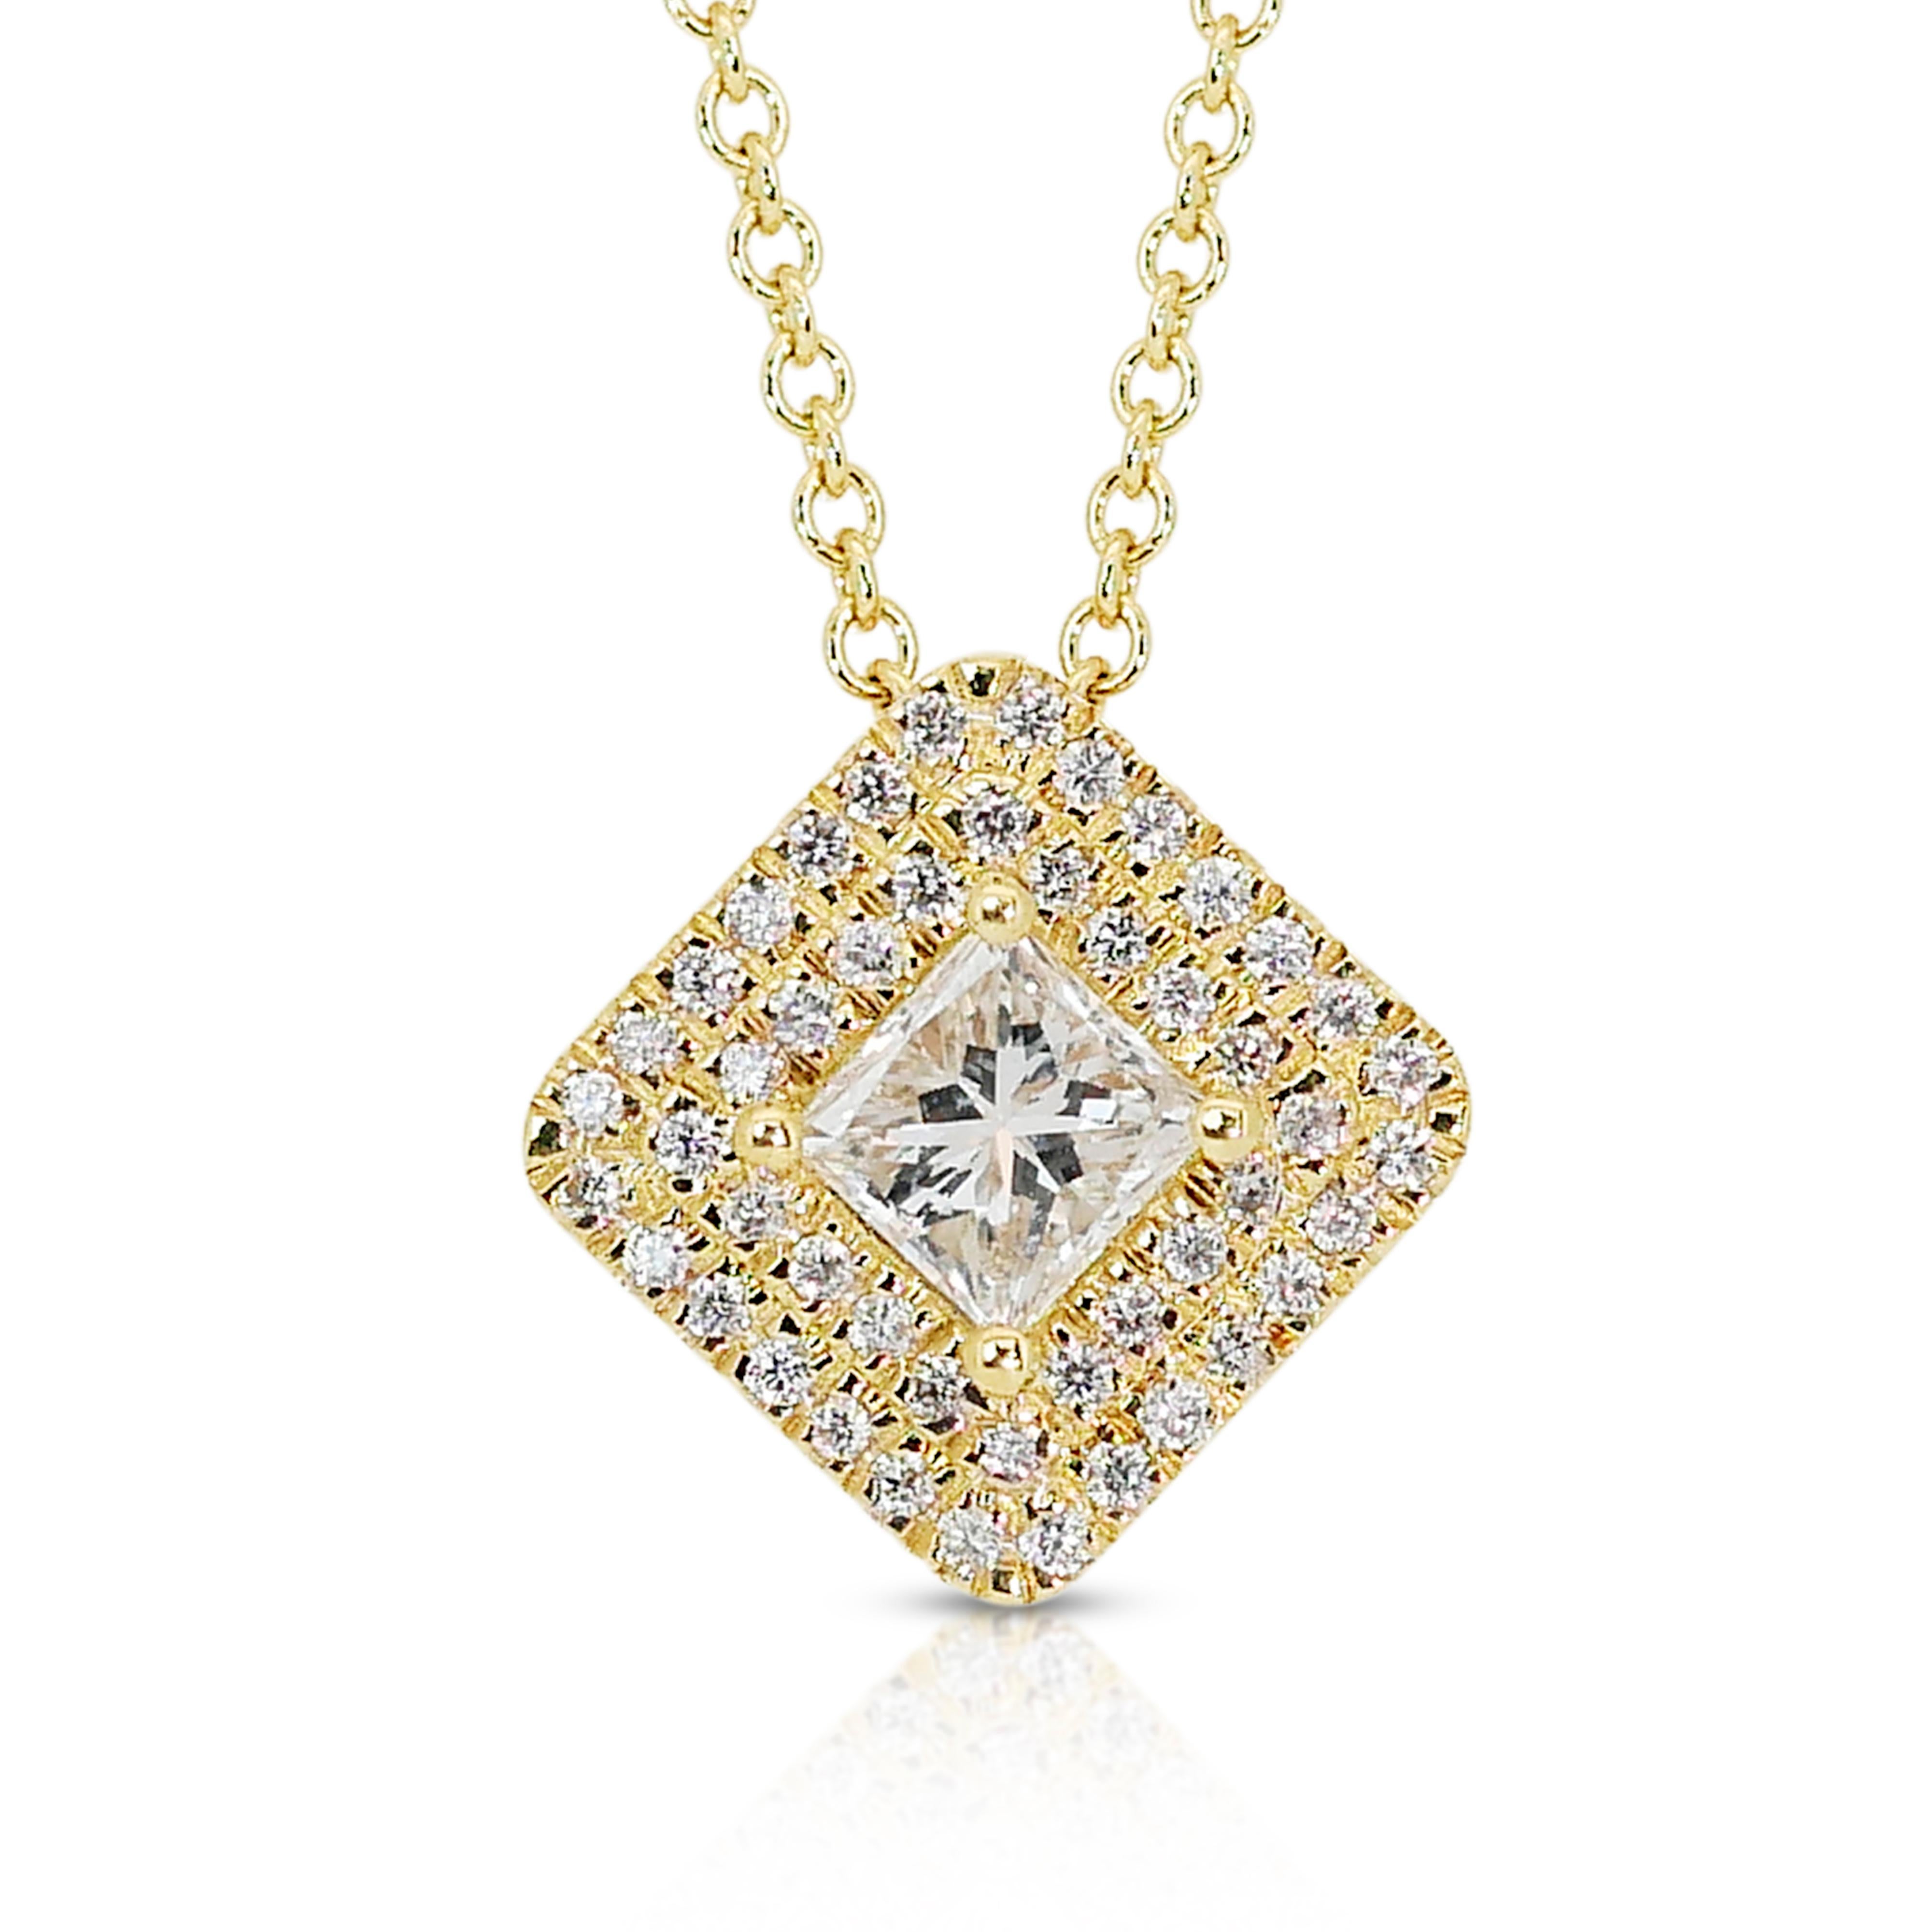 Collier double halo sophistiqué en or jaune 18 carats de 0,60 ct de diamants - certifié IGI

Cet élégant collier à double halo en or jaune 18k est orné d'un diamant de taille princesse de 0,40 carat qui rayonne d'un charme sophistiqué par sa couleur